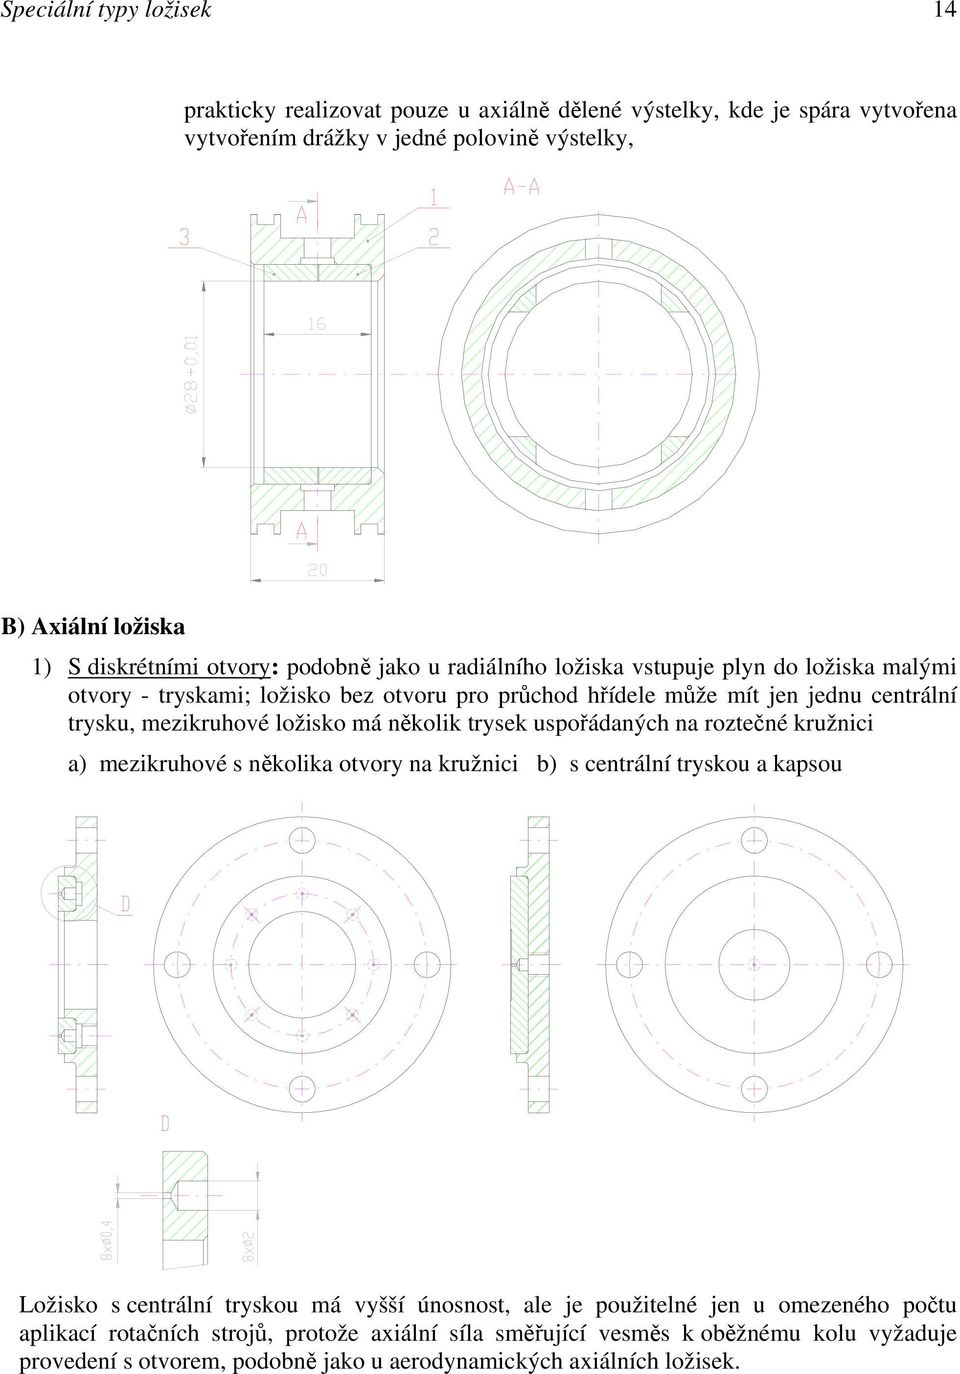 mezikruhové ložisko má několik trysek uspořádaných na roztečné kružnici a) mezikruhové s několika otvory na kružnici b) s centrální tryskou a kapsou Ložisko s centrální tryskou má vyšší